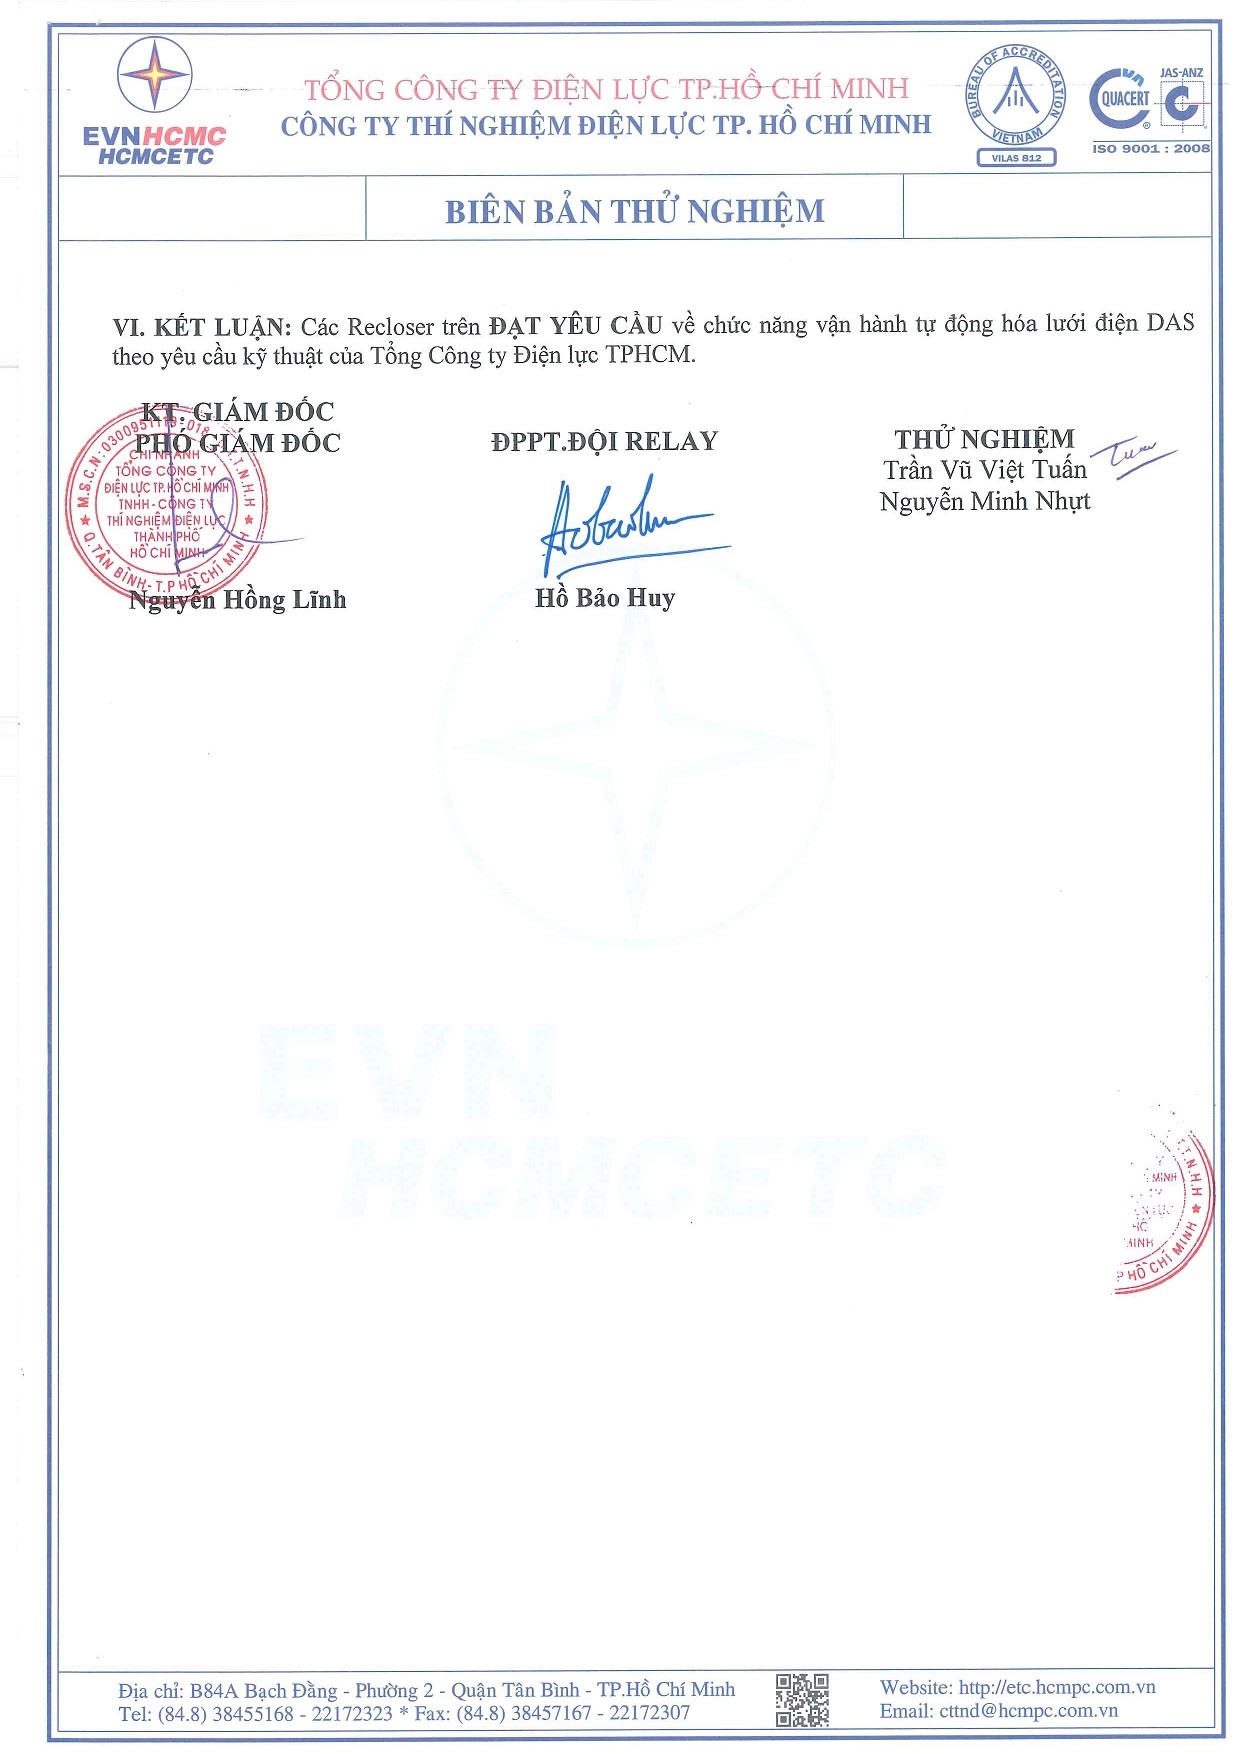 Biển bảng thí nghiệm Recloser Entec Korea 630 27kV - Quatest 3